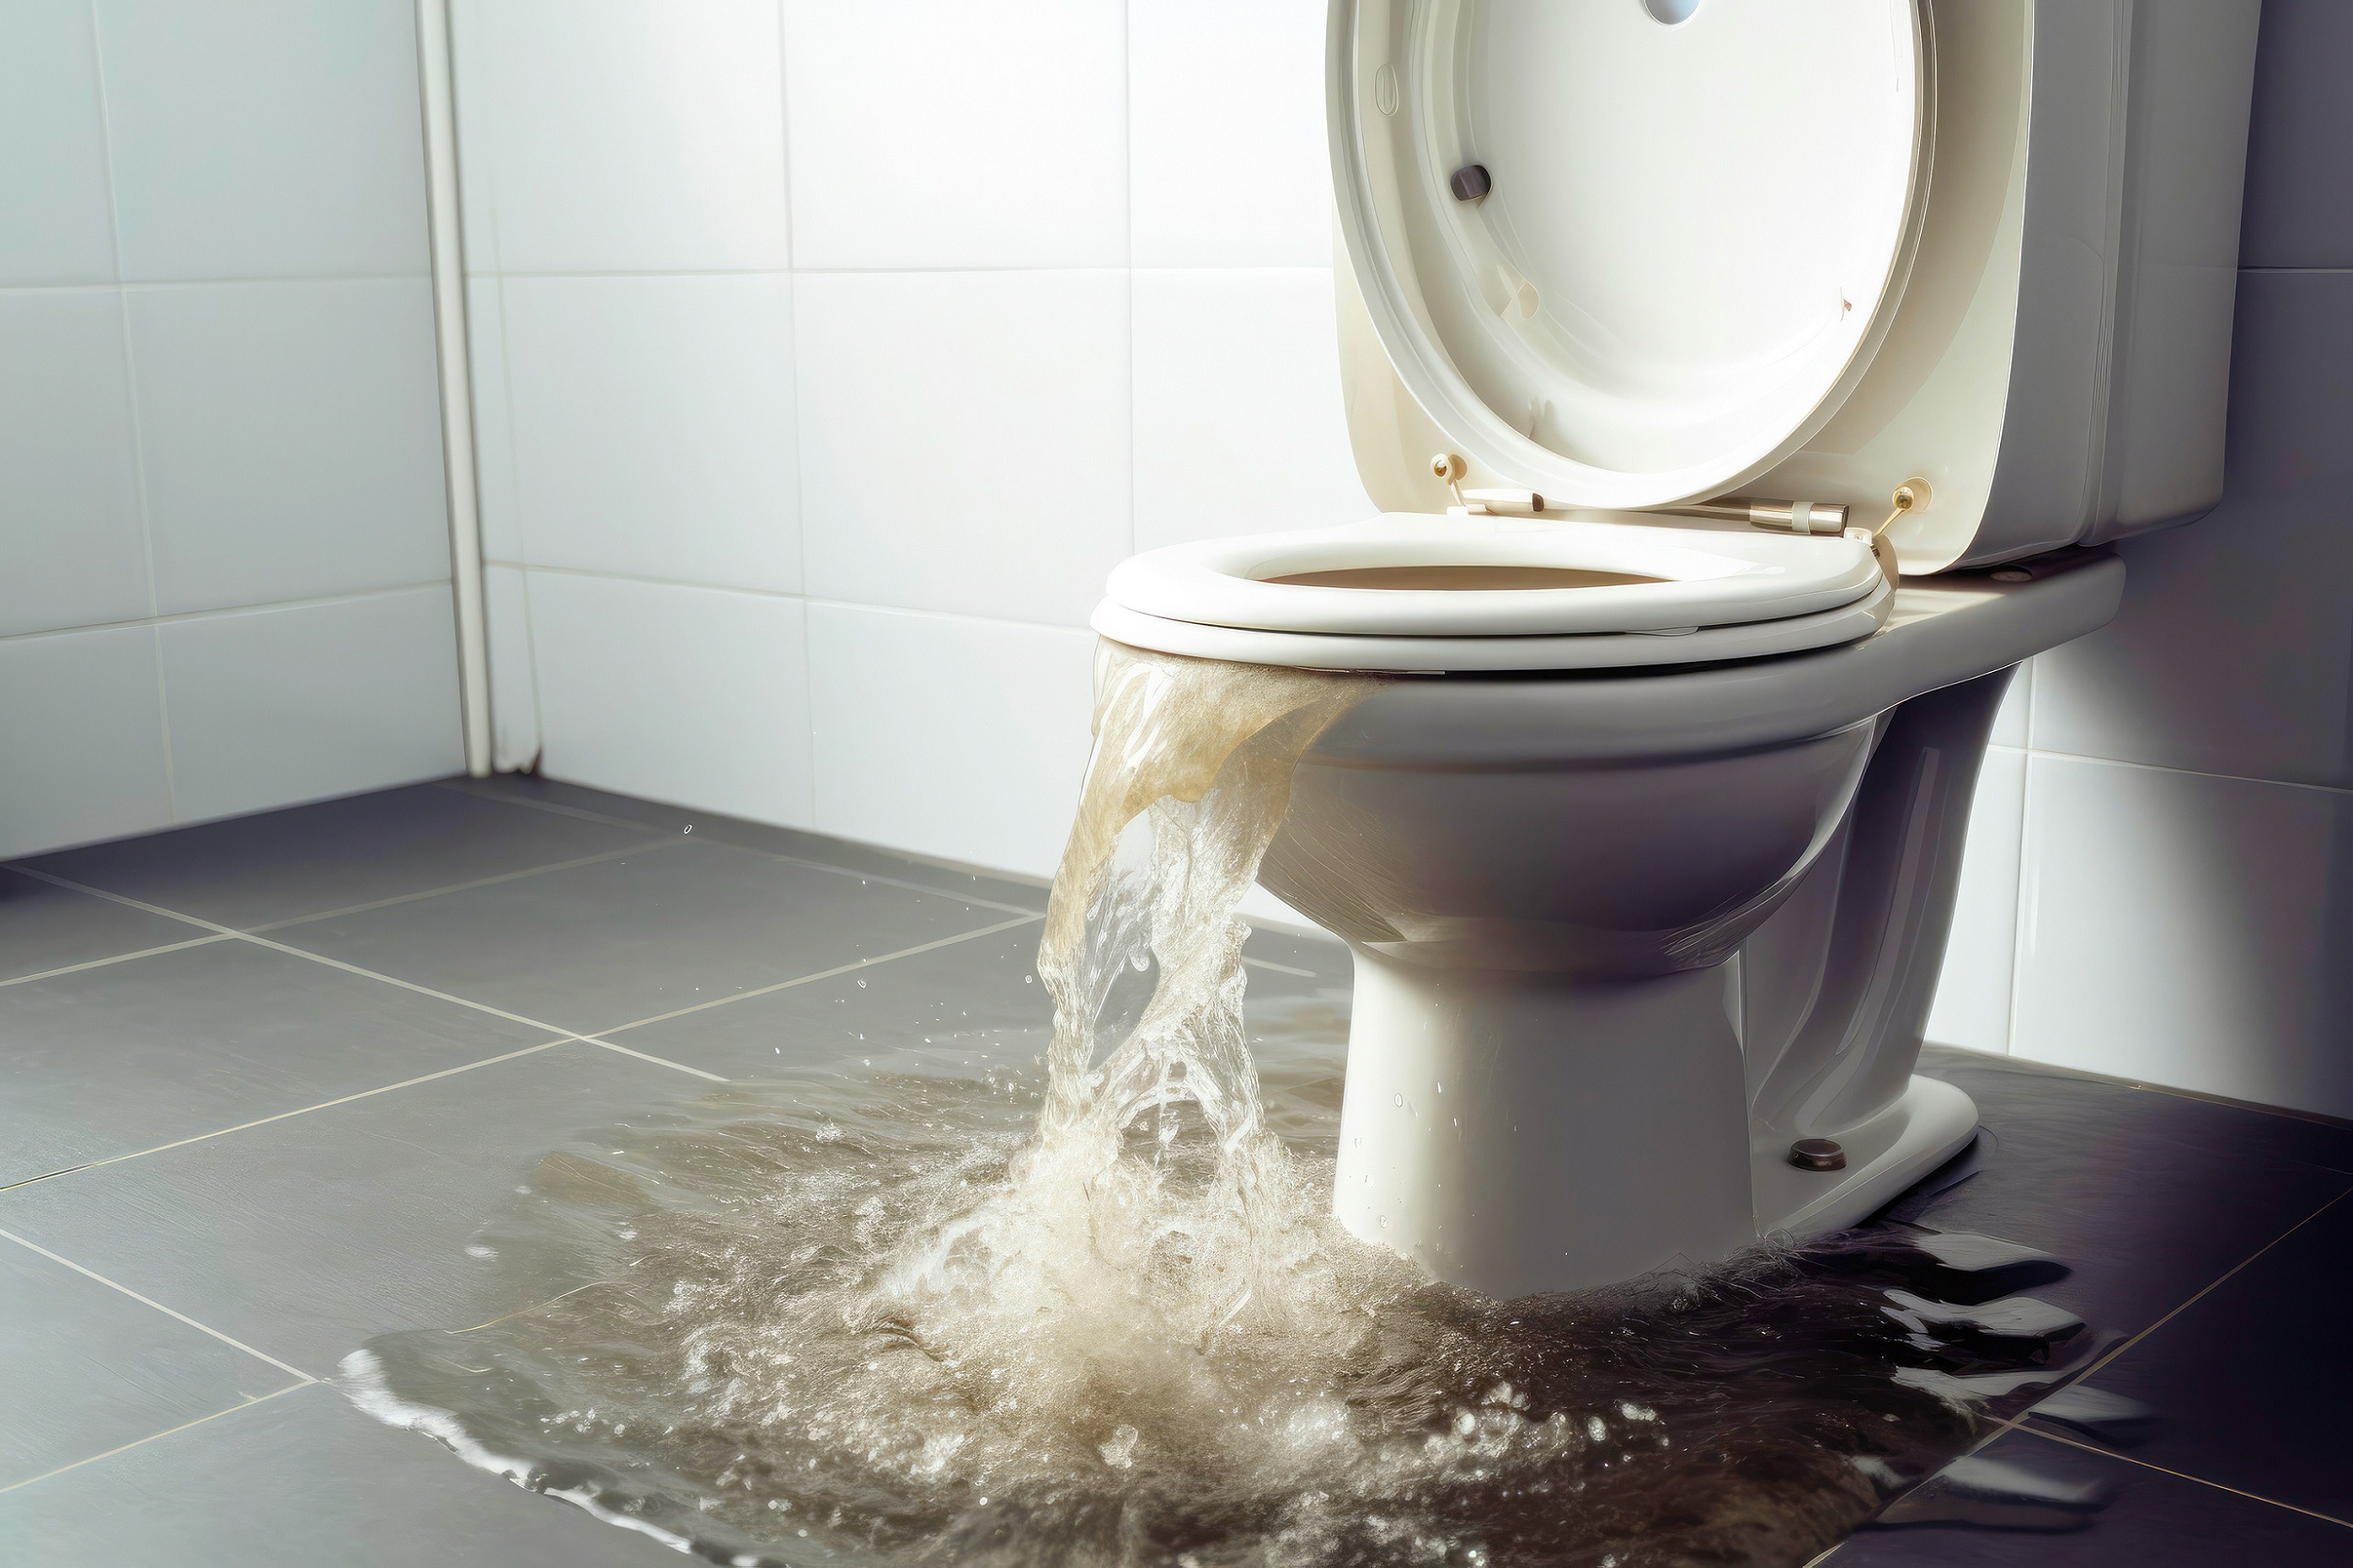 Toilette bouchée wc - le furet - deboucher canalisation wc lavabos